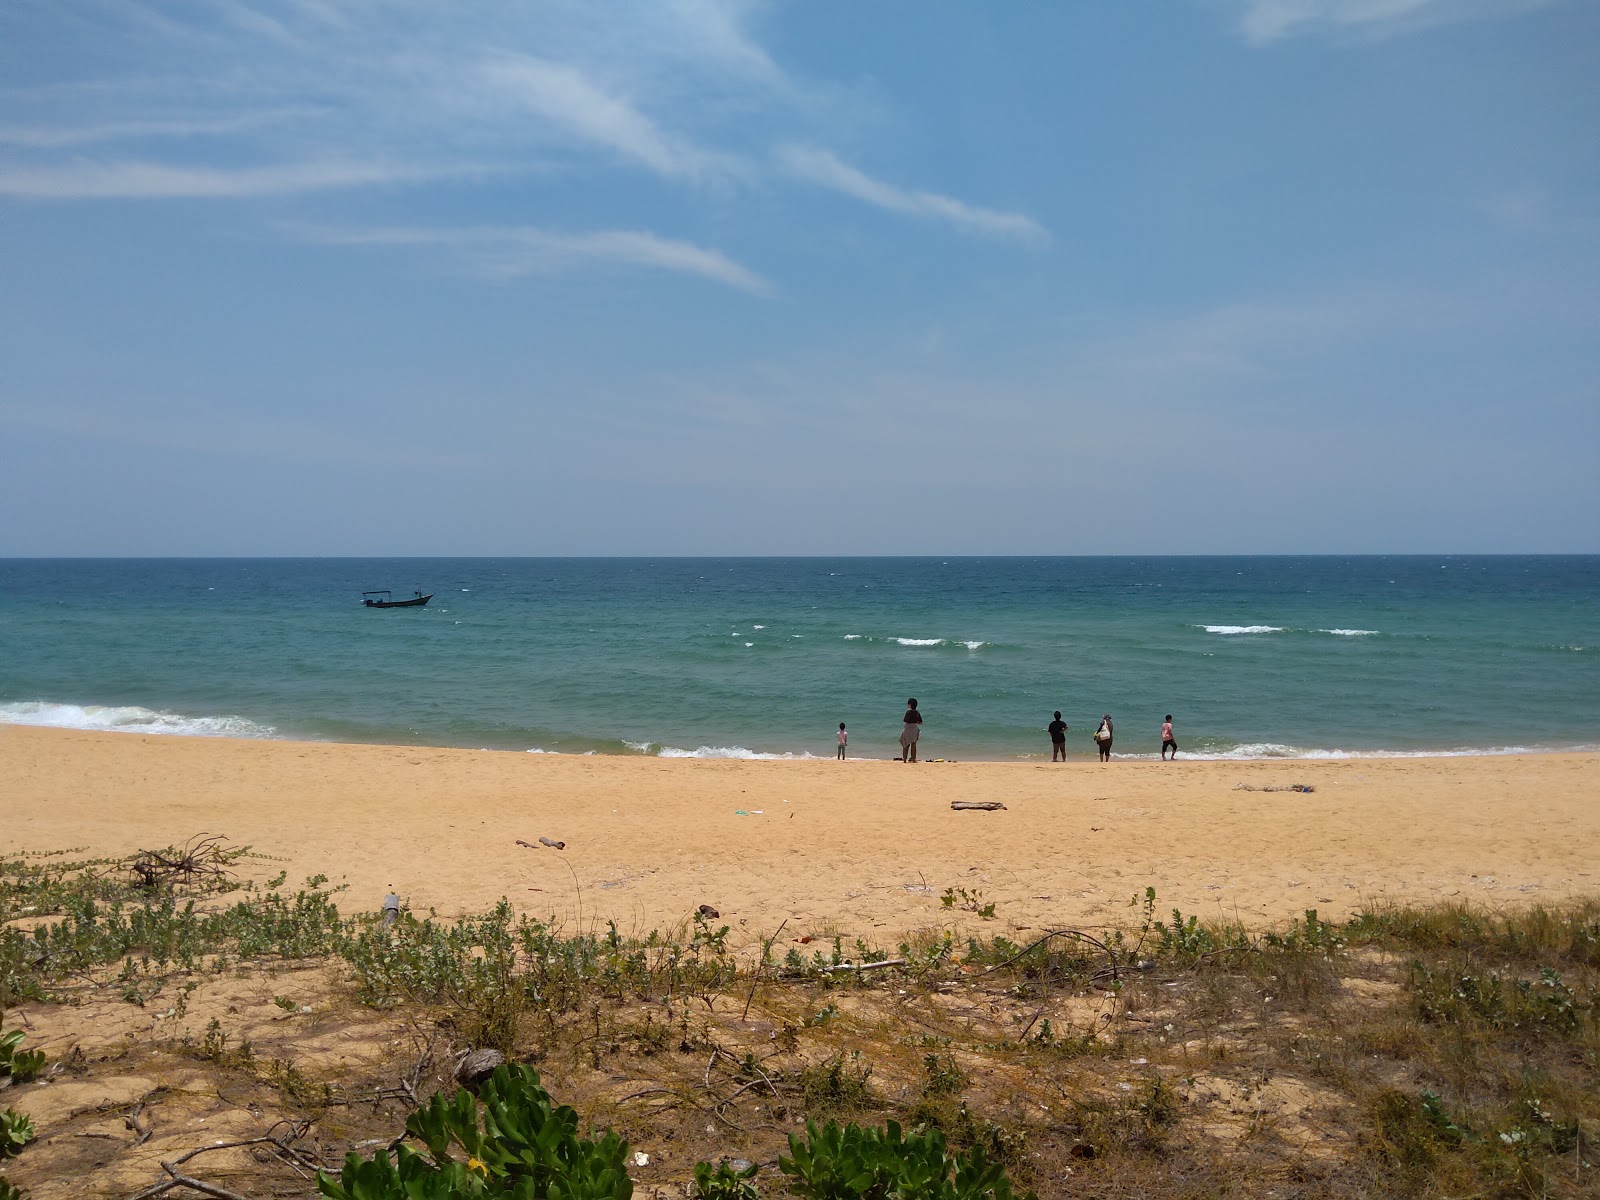 Fotografie cu Rantau Abang Beach - locul popular printre cunoscătorii de relaxare